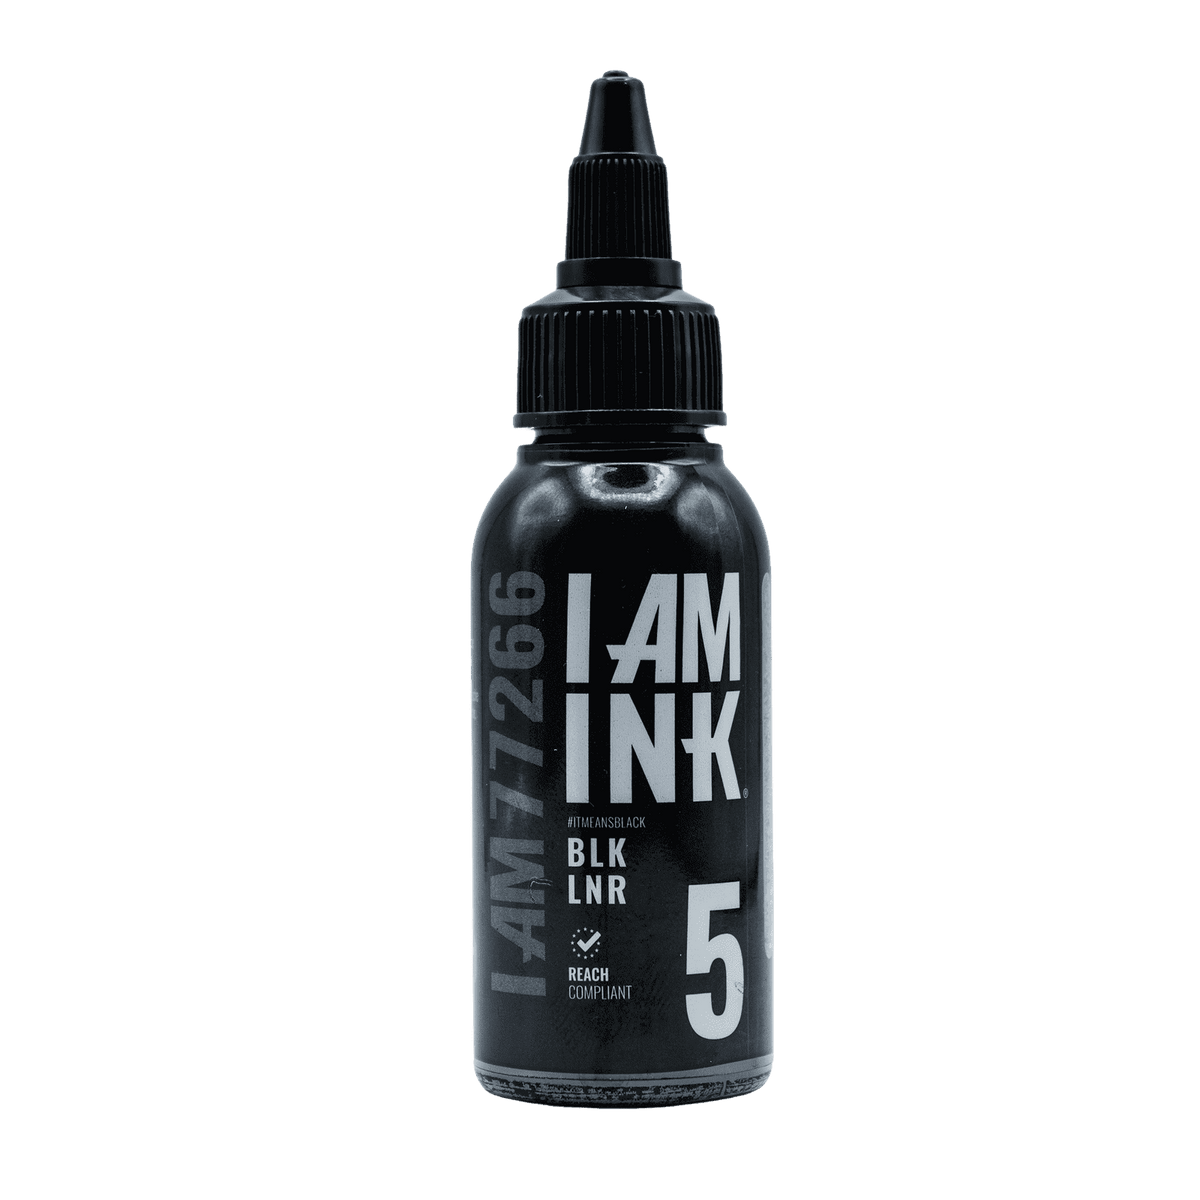 I AM INK pierwszej generacji 5 BLK LNR